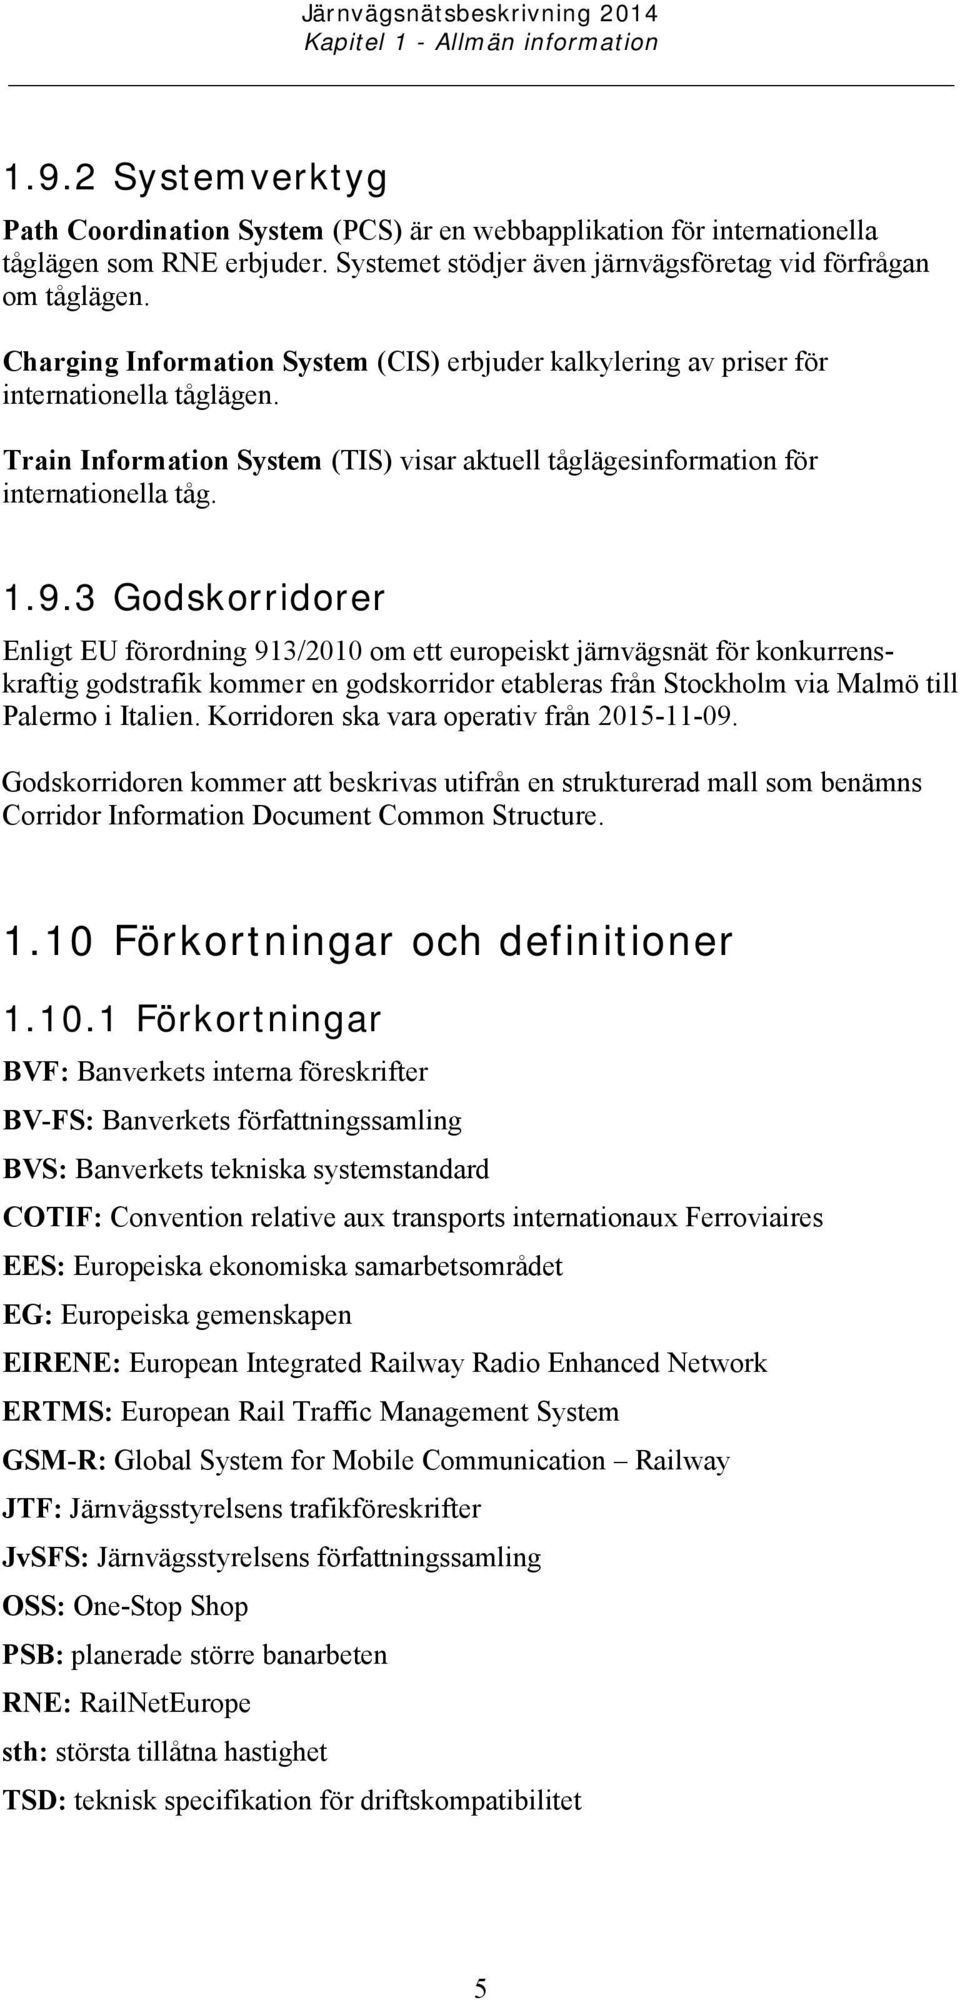 Train Information System (TIS) visar aktuell tåglägesinformation för internationella tåg. 1.9.